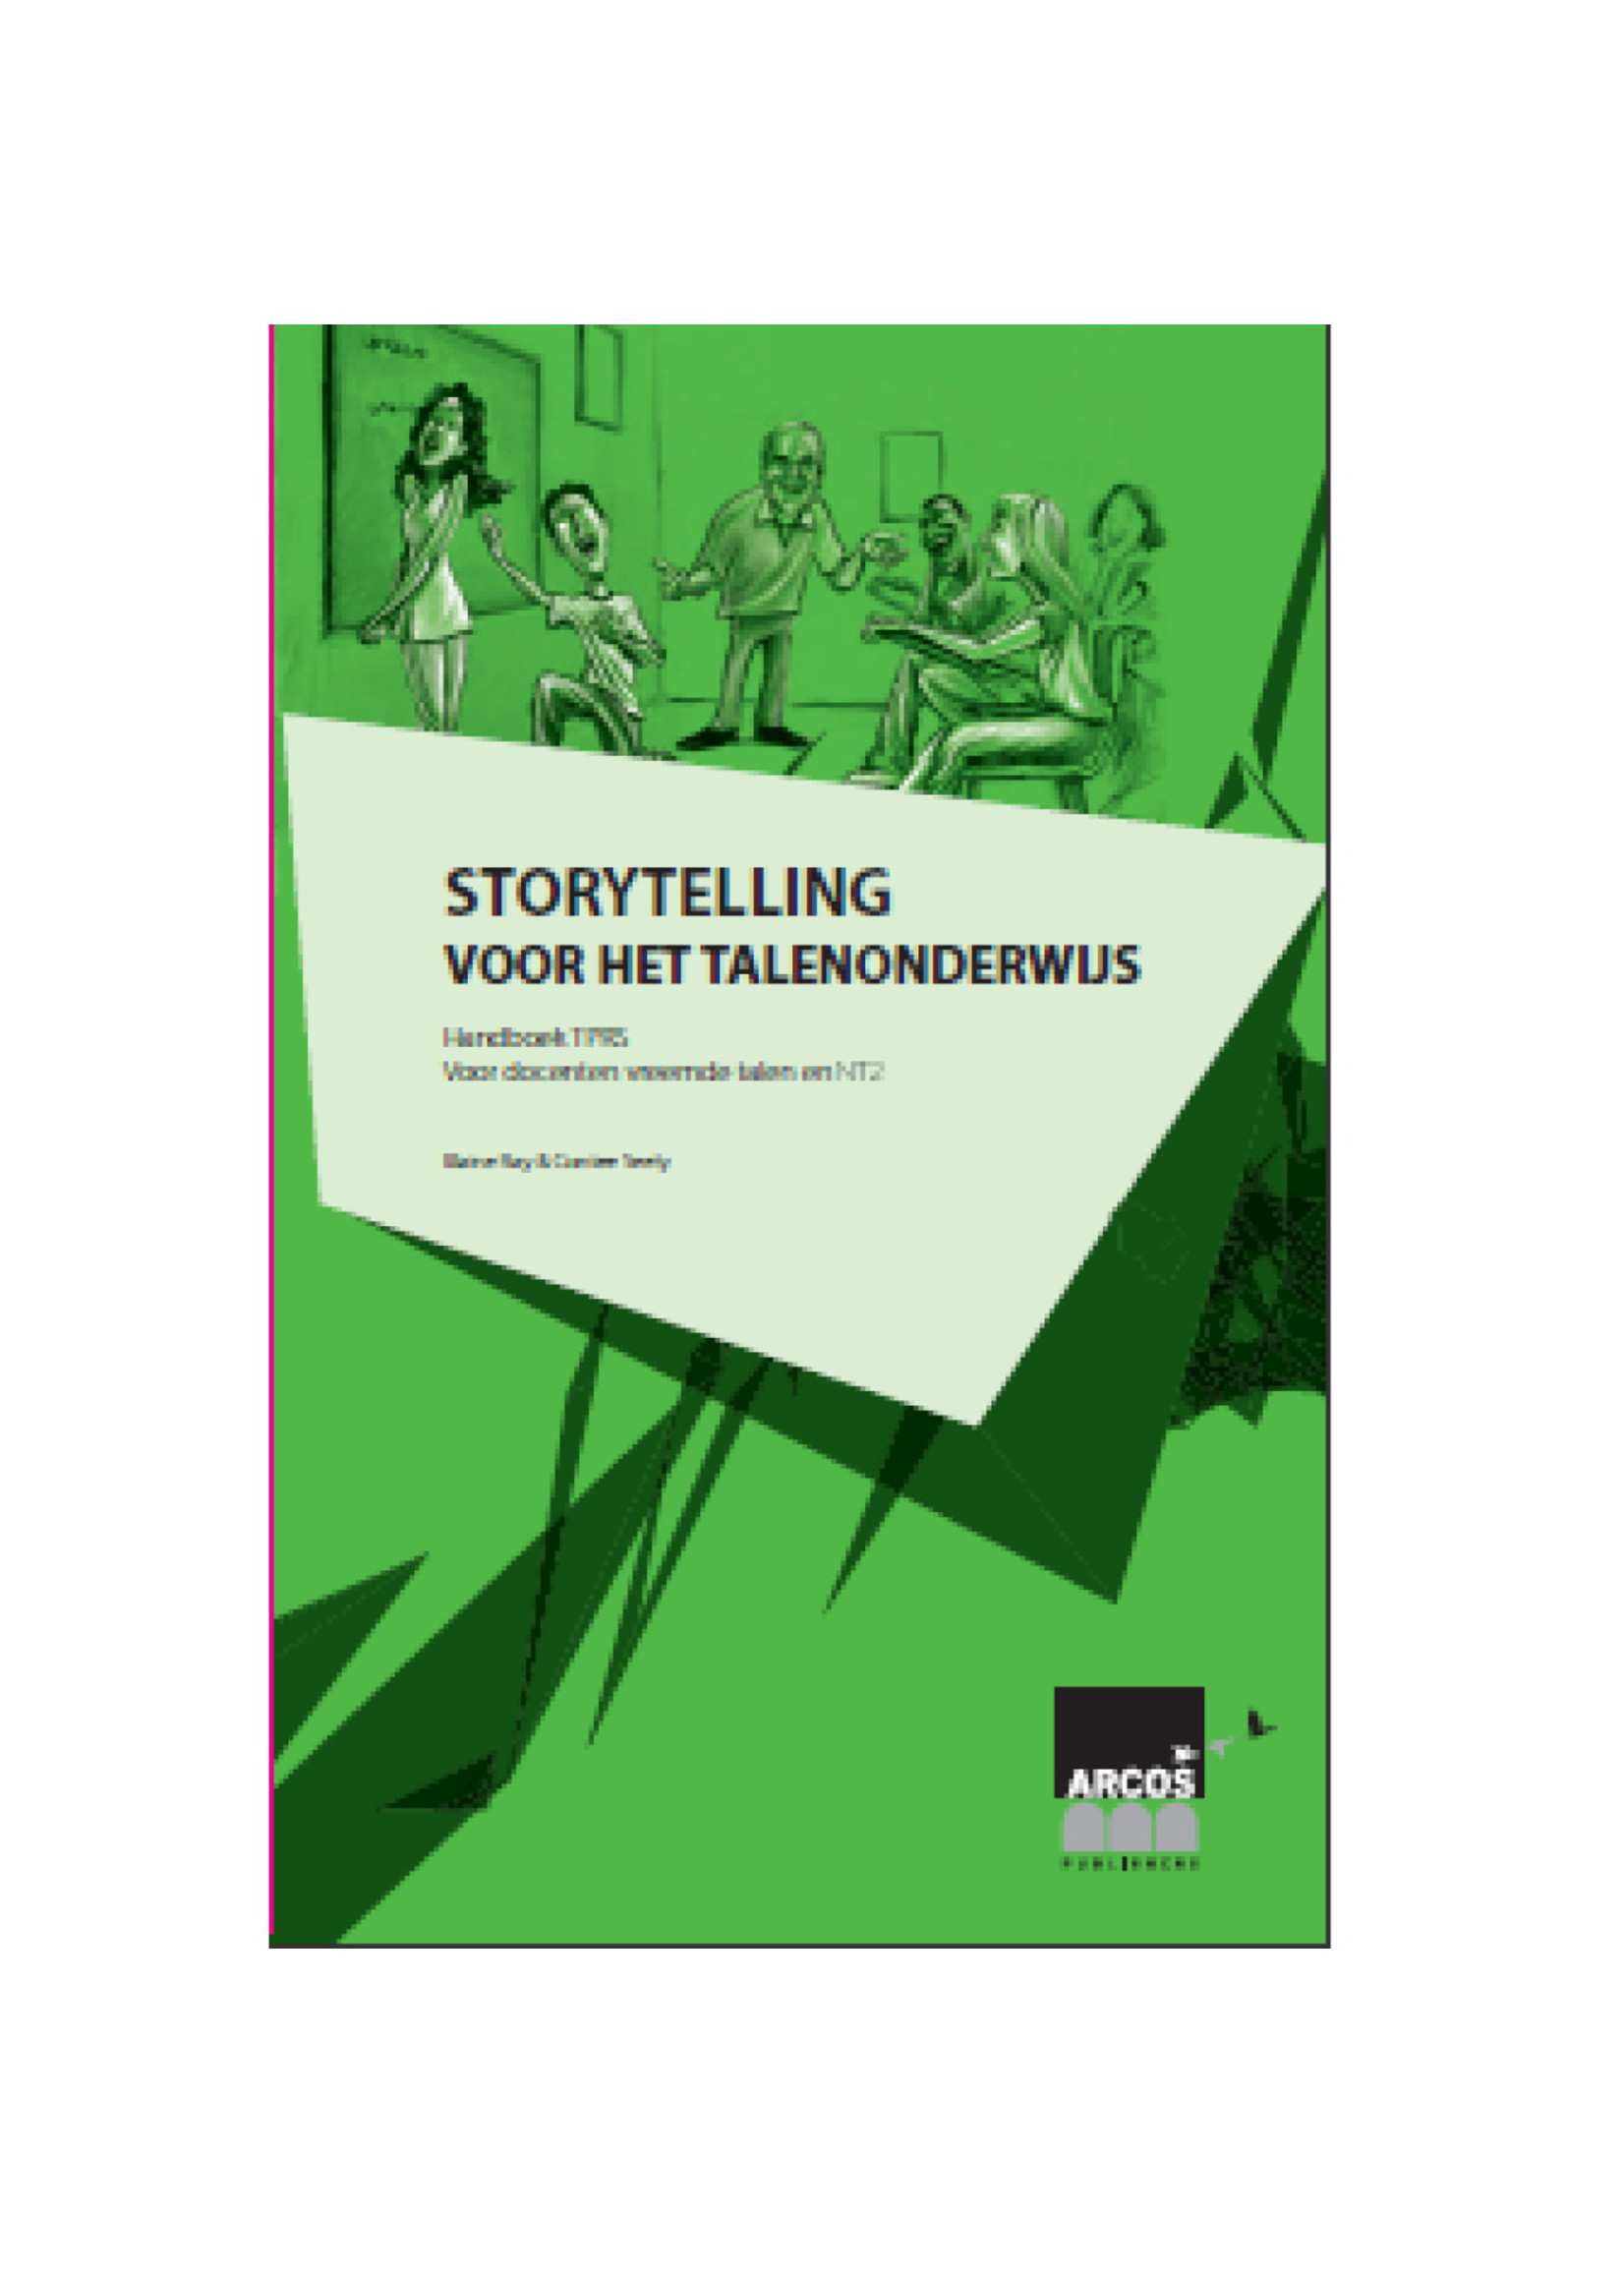 Storytelling voor het talenonderwijs